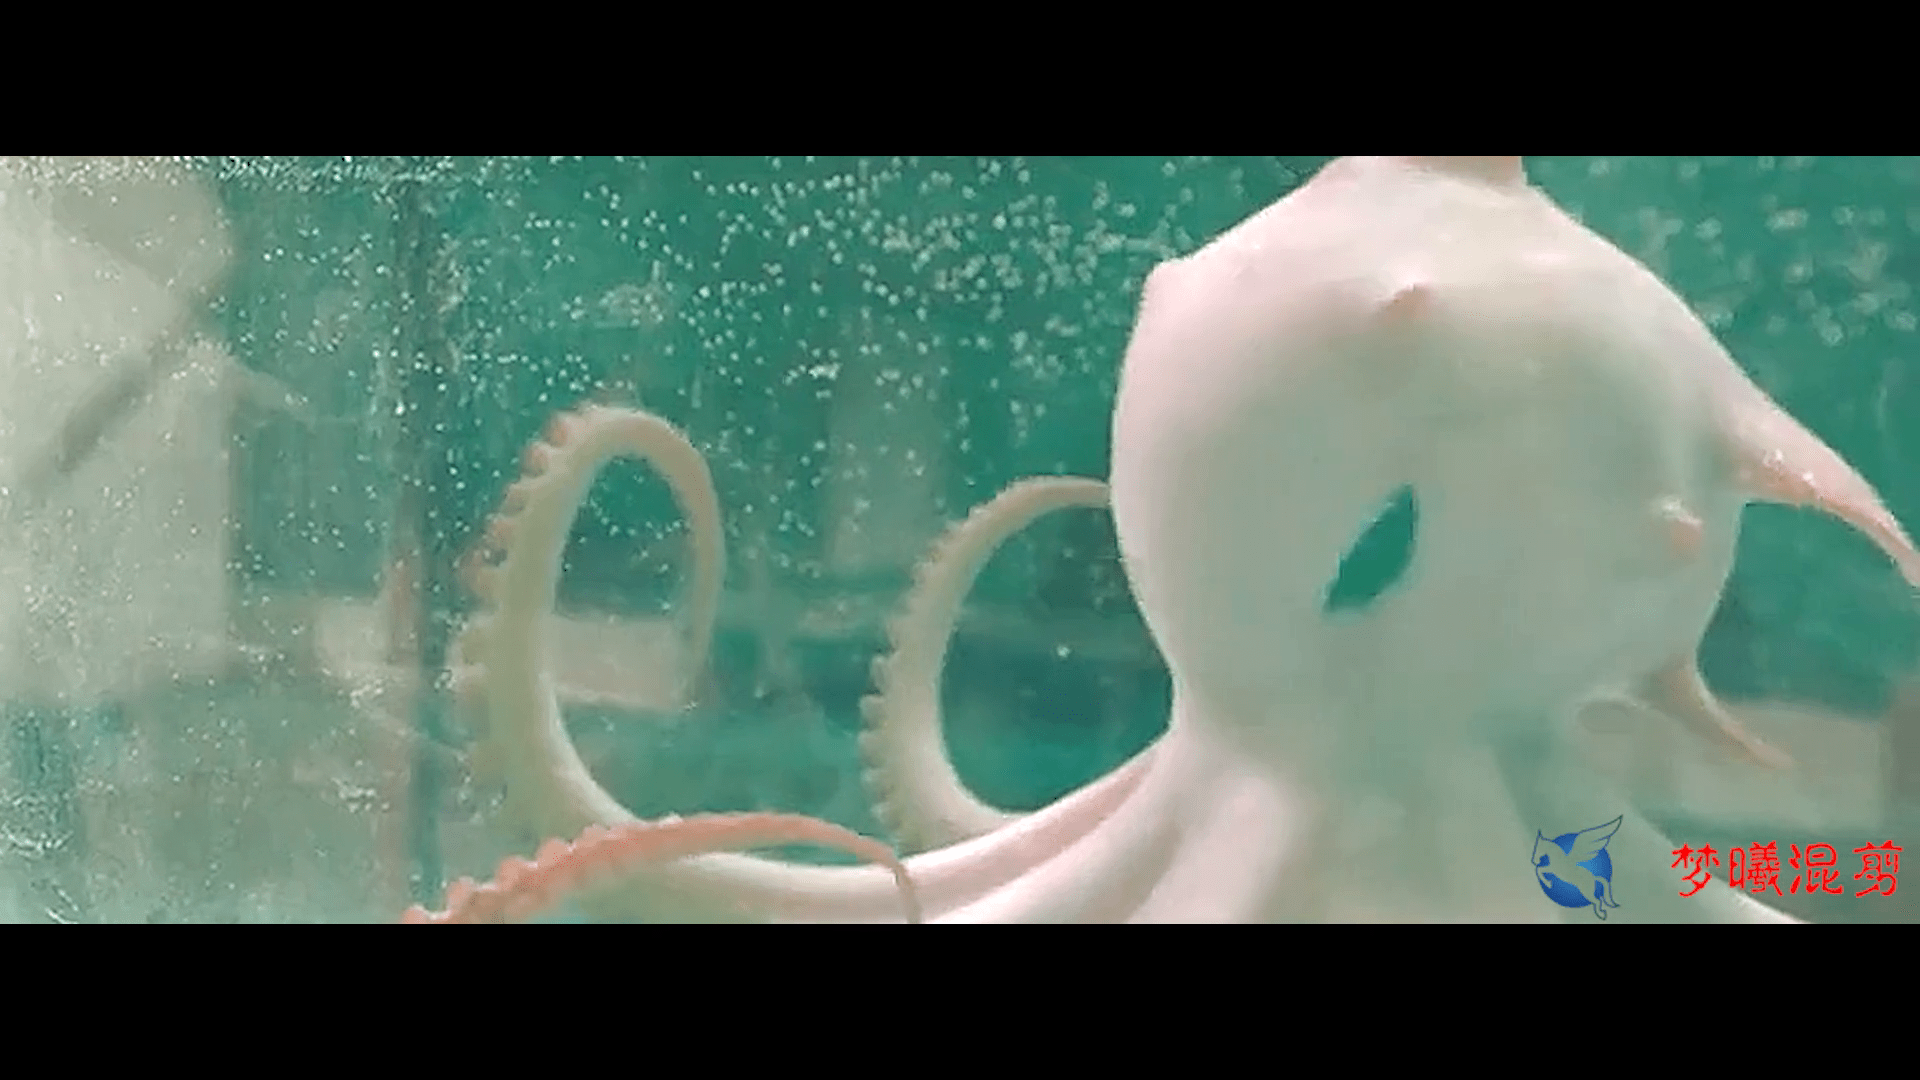 章鱼附身人类的电影图片